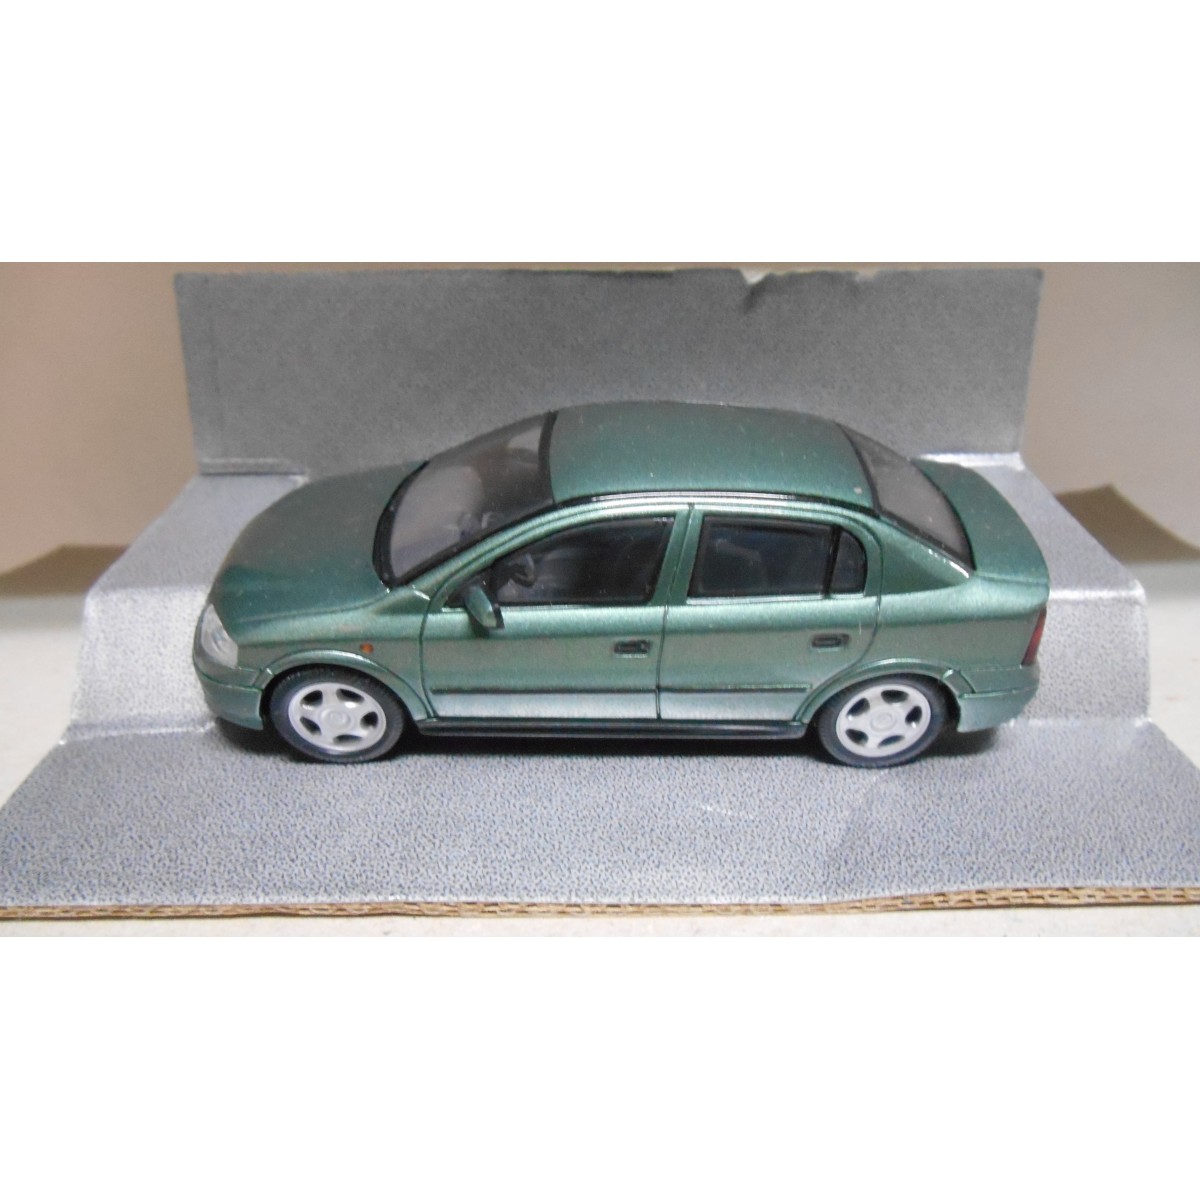 https://www.bcnstockcars.com/78966-thickbox_default/opel-astra-g-sedan-green-143-dealer-schuco.jpg